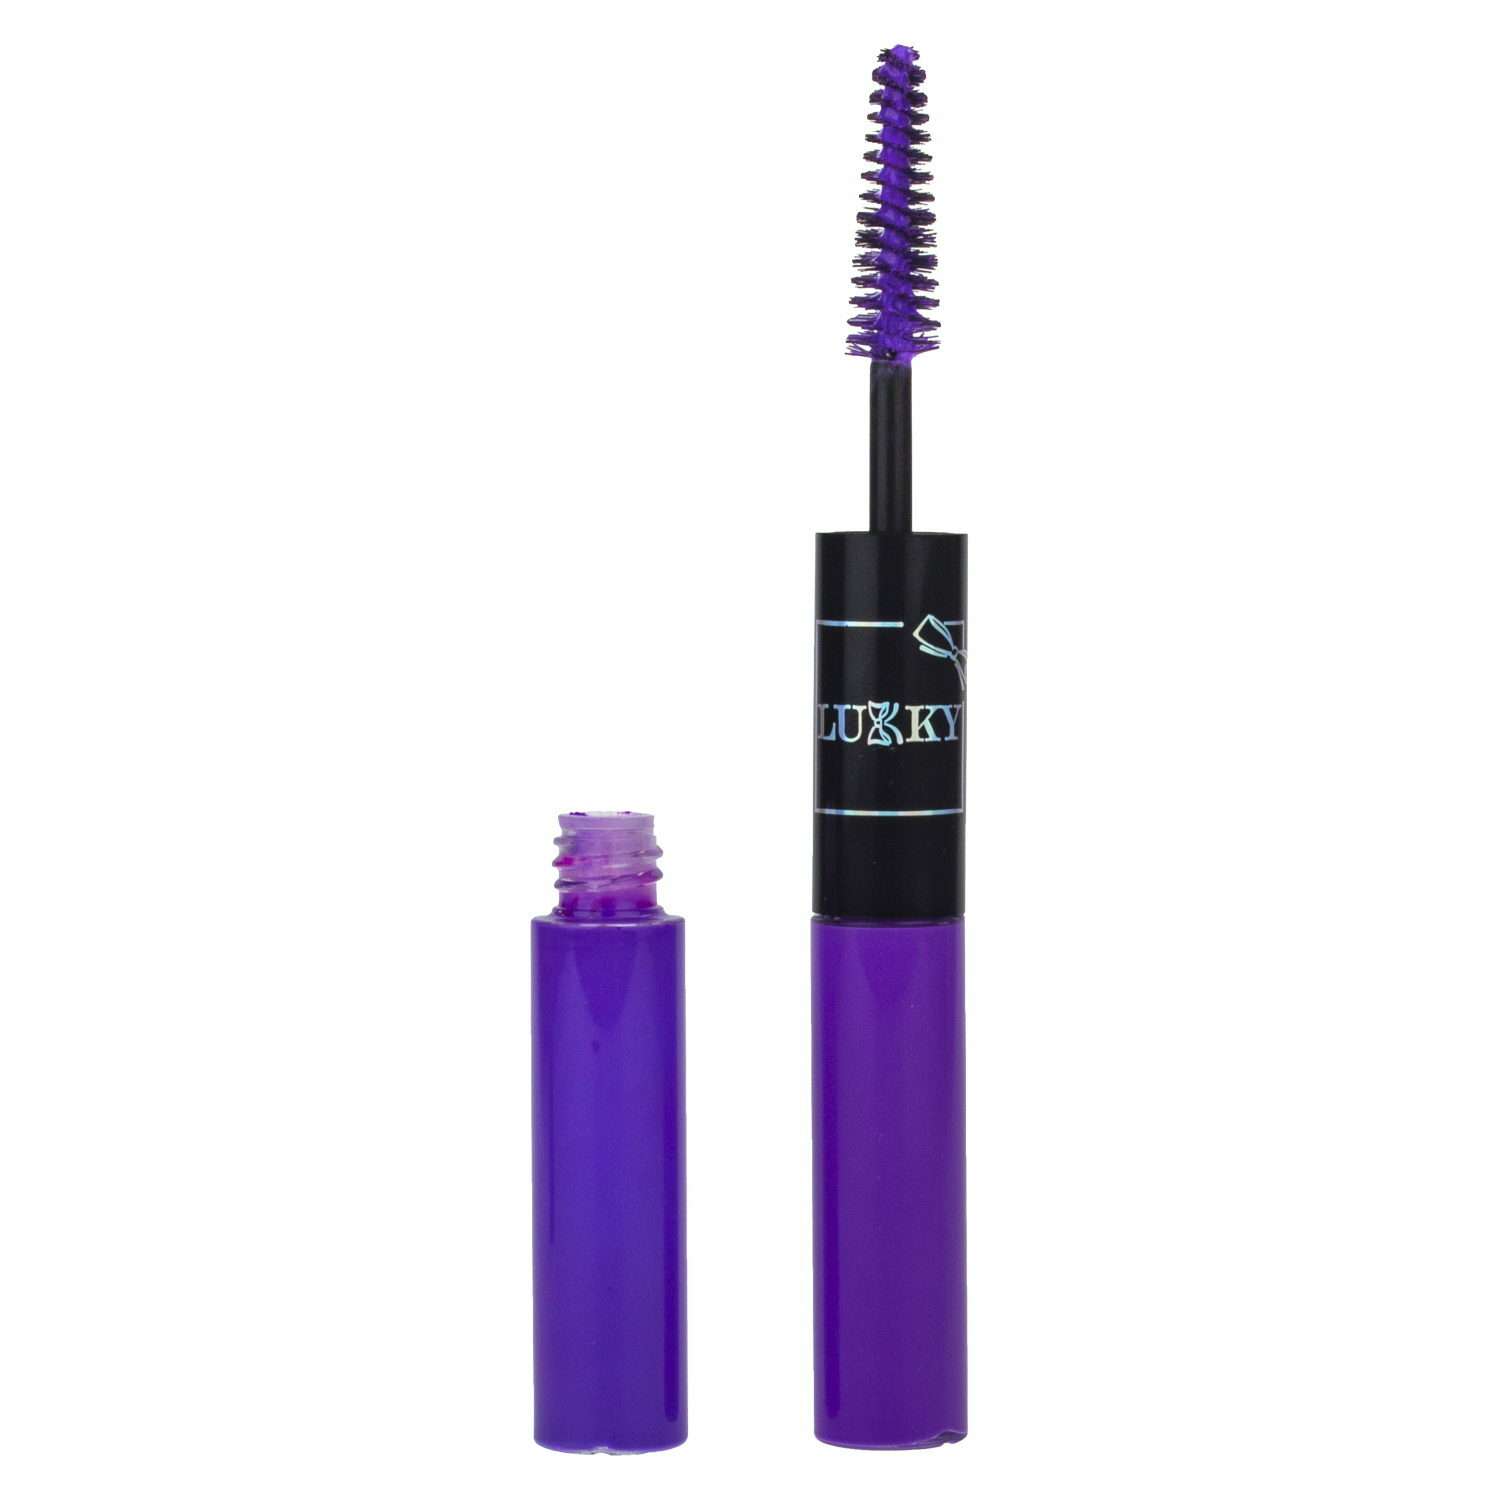 Набор косметики Lukky УльтраФиолет тушь для ресниц и подводка фиолетовый неон - фото 2